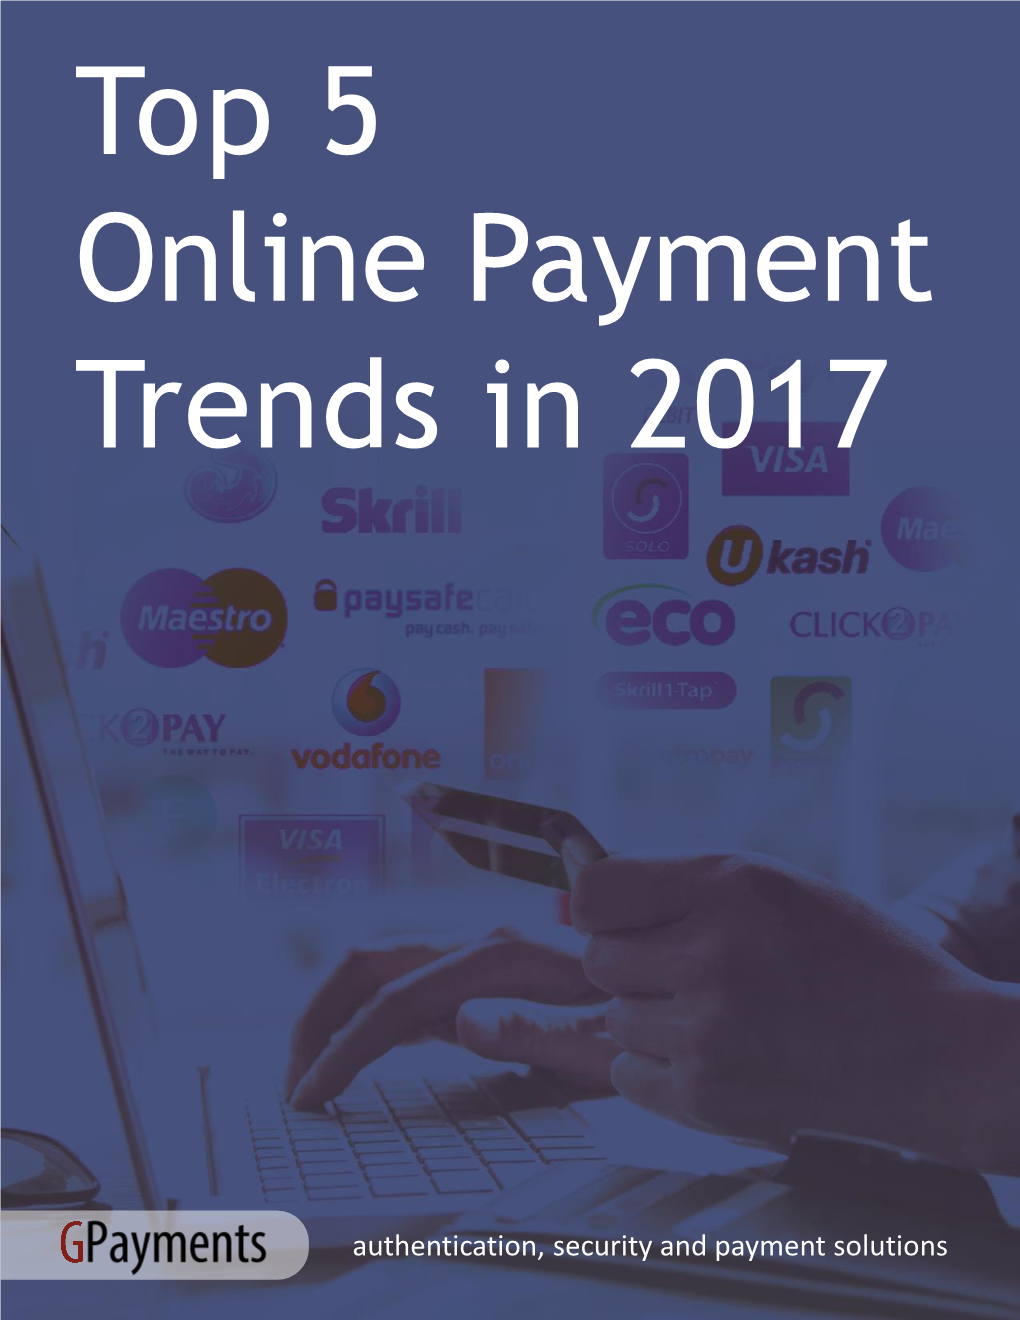 Top 5 Online Payment Trends in 2017